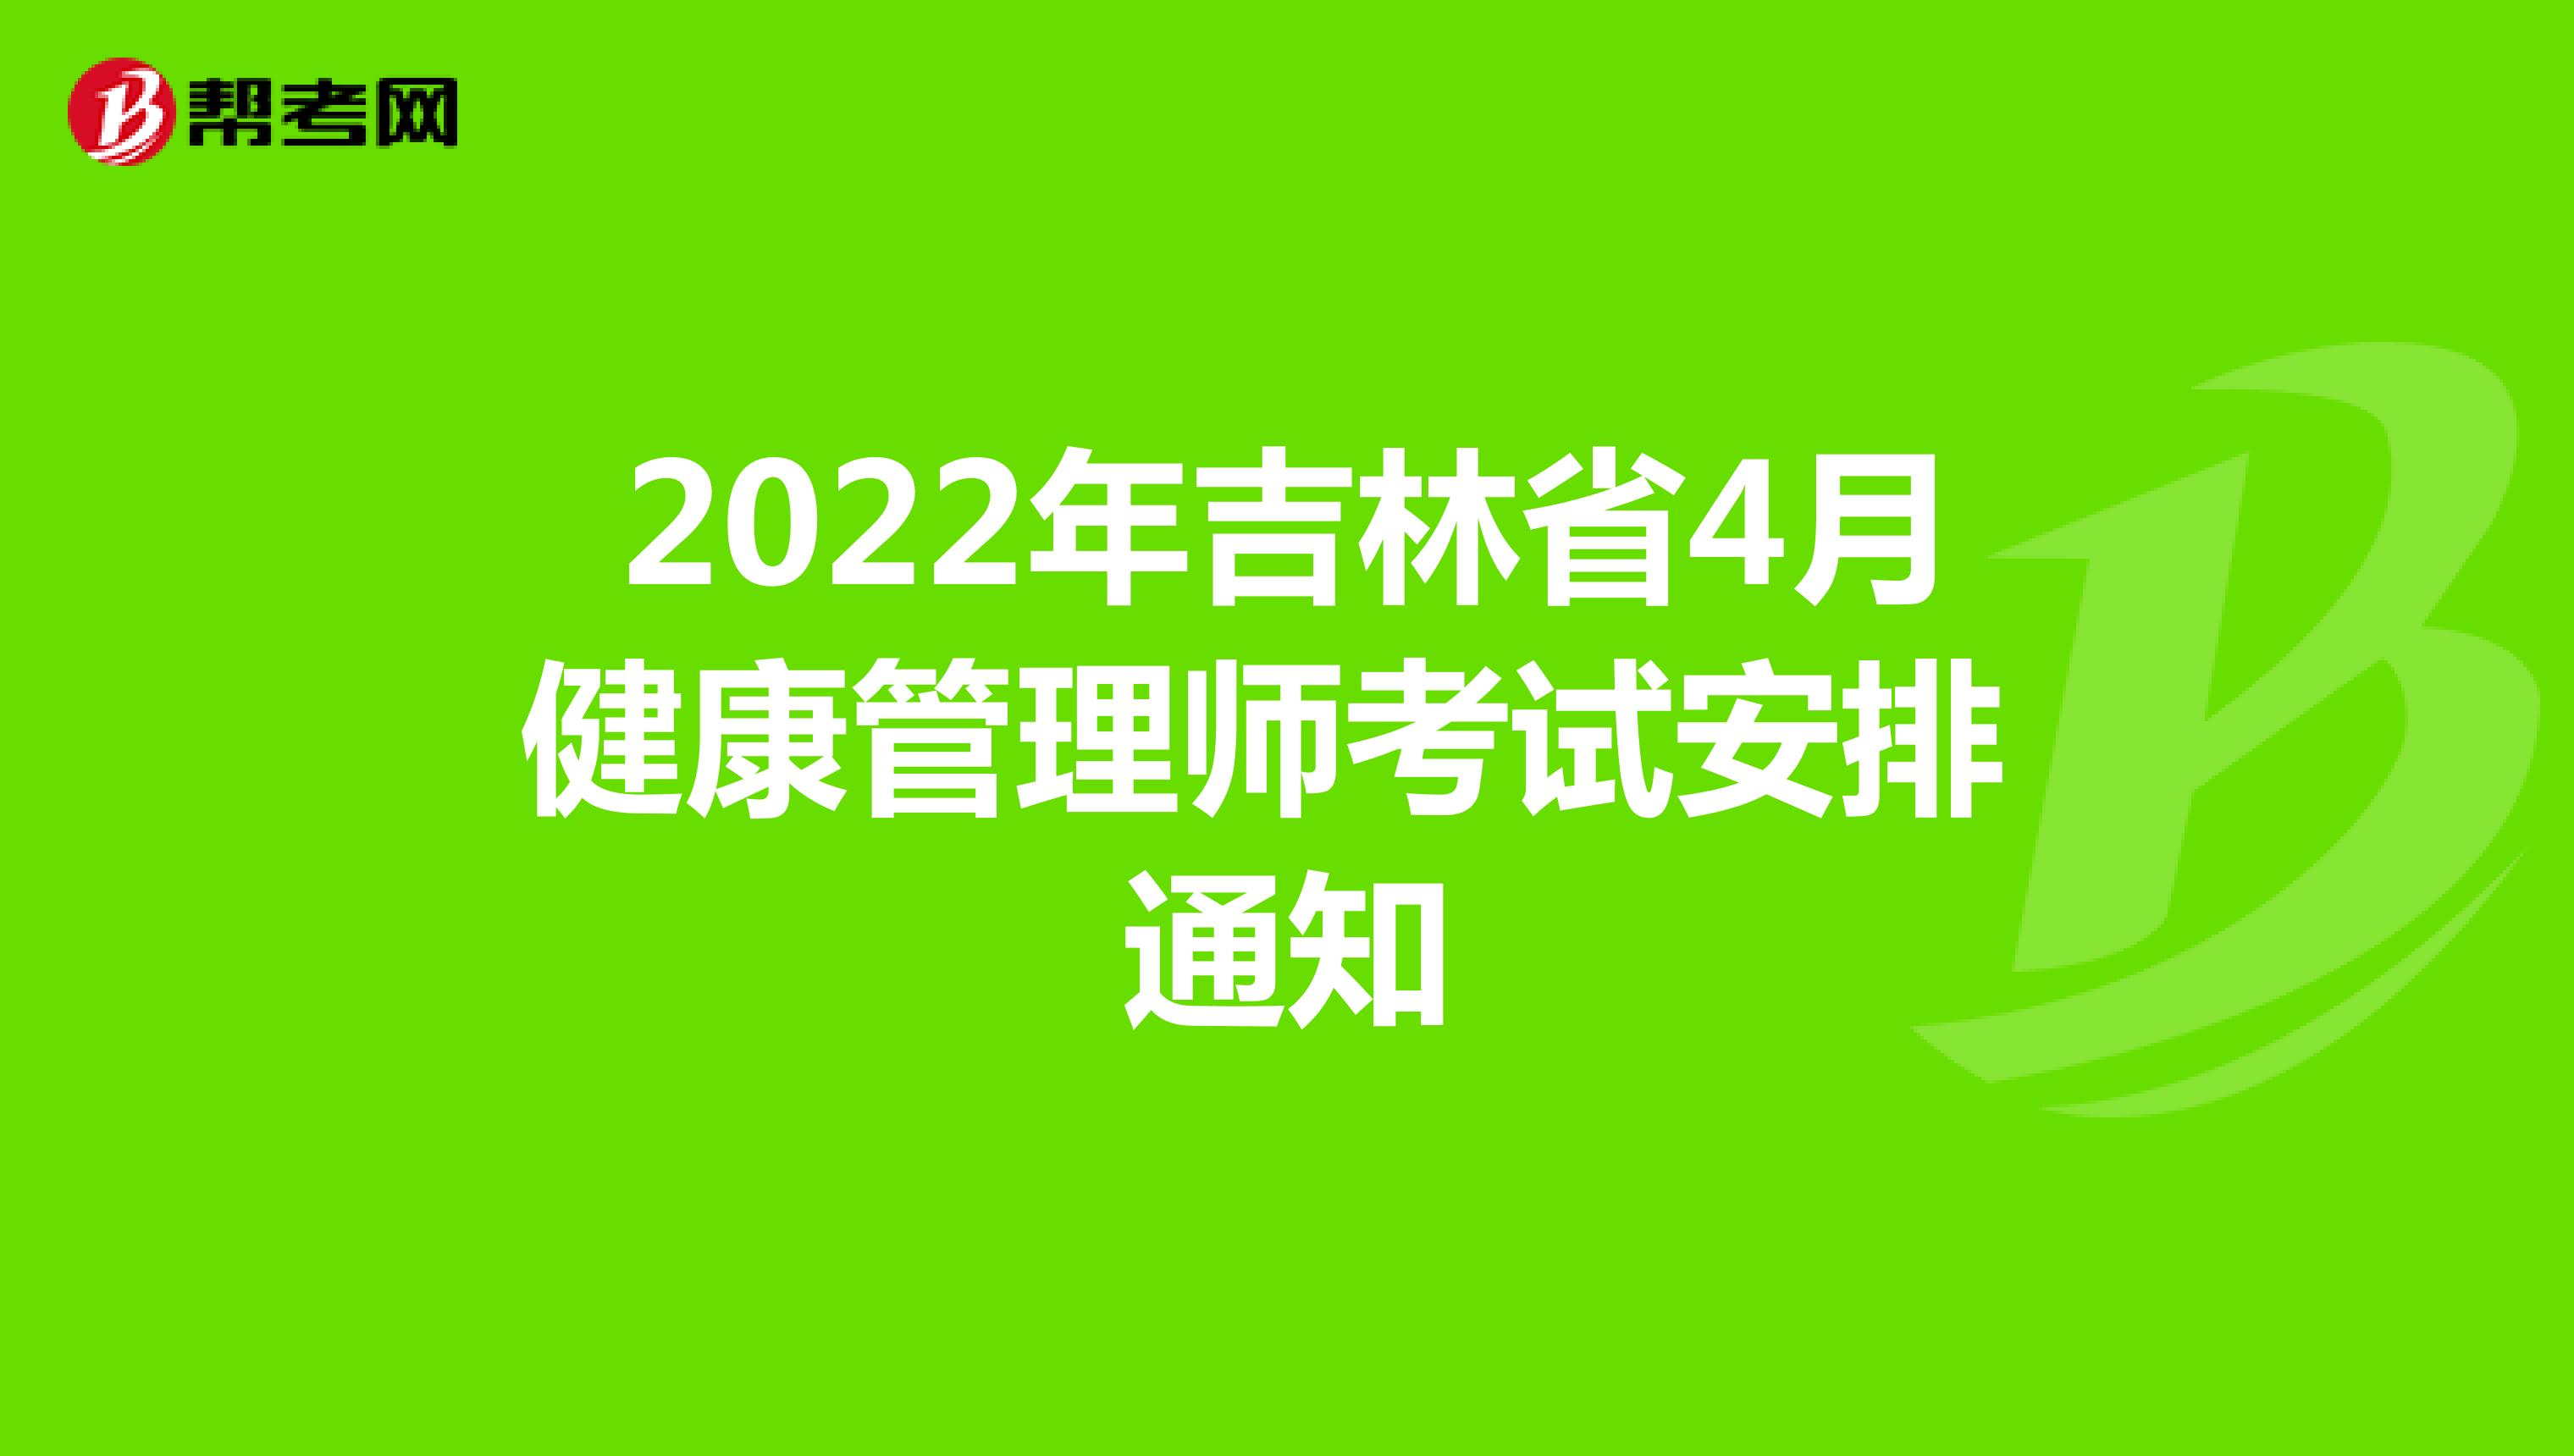 2022年吉林省4月健康管理师考试安排通知